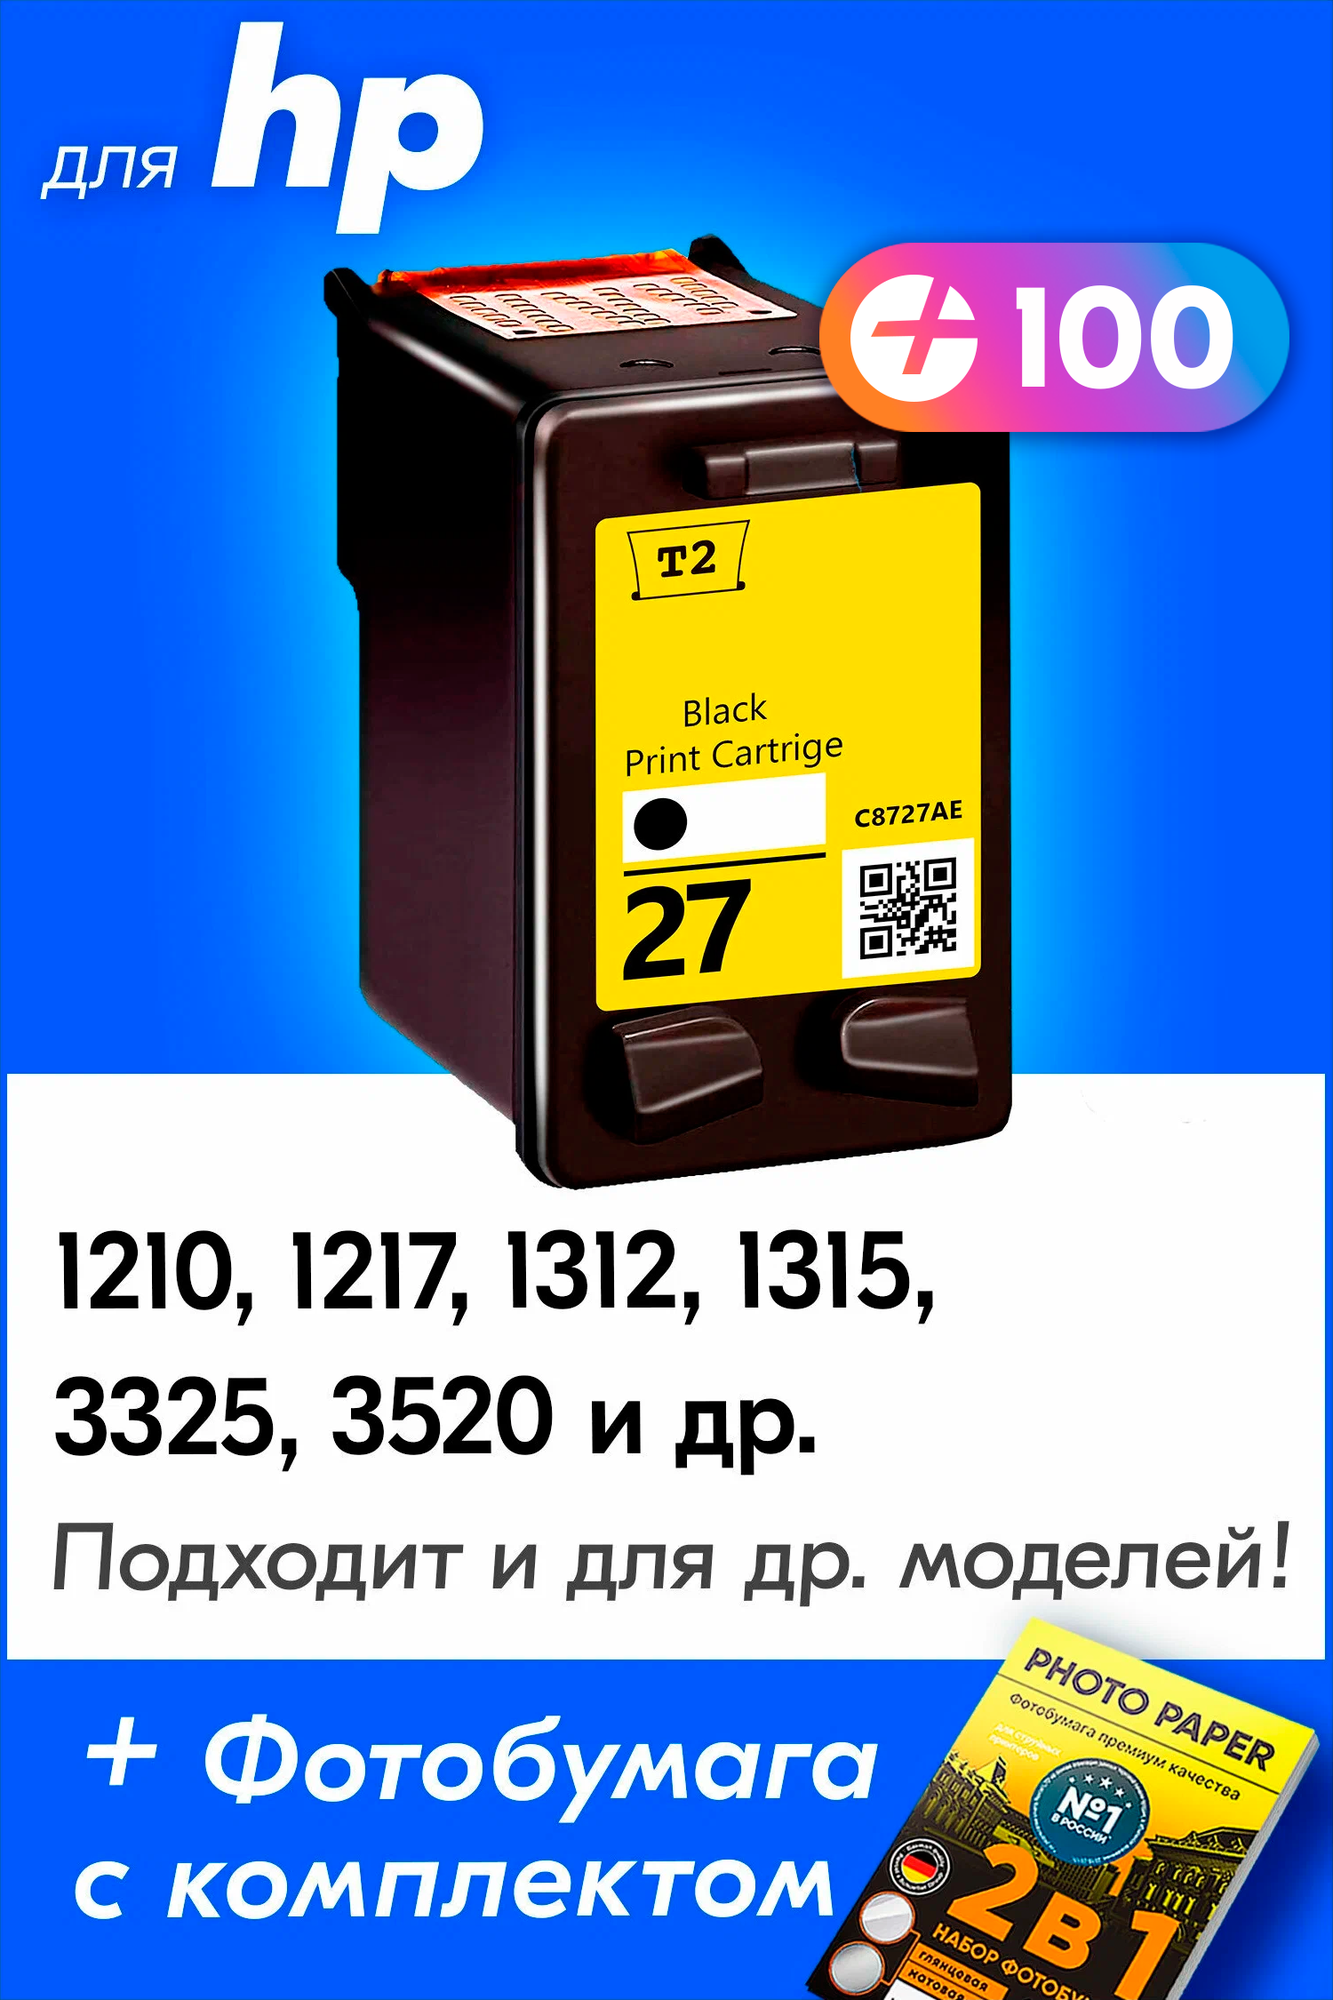 Картридж для HP 27 XL, HP DeskJet 3520, PSC 1315, 1217, 1210 и др. с чернилами (с краской) для струйного принтера, Черный (Black), 1 шт.